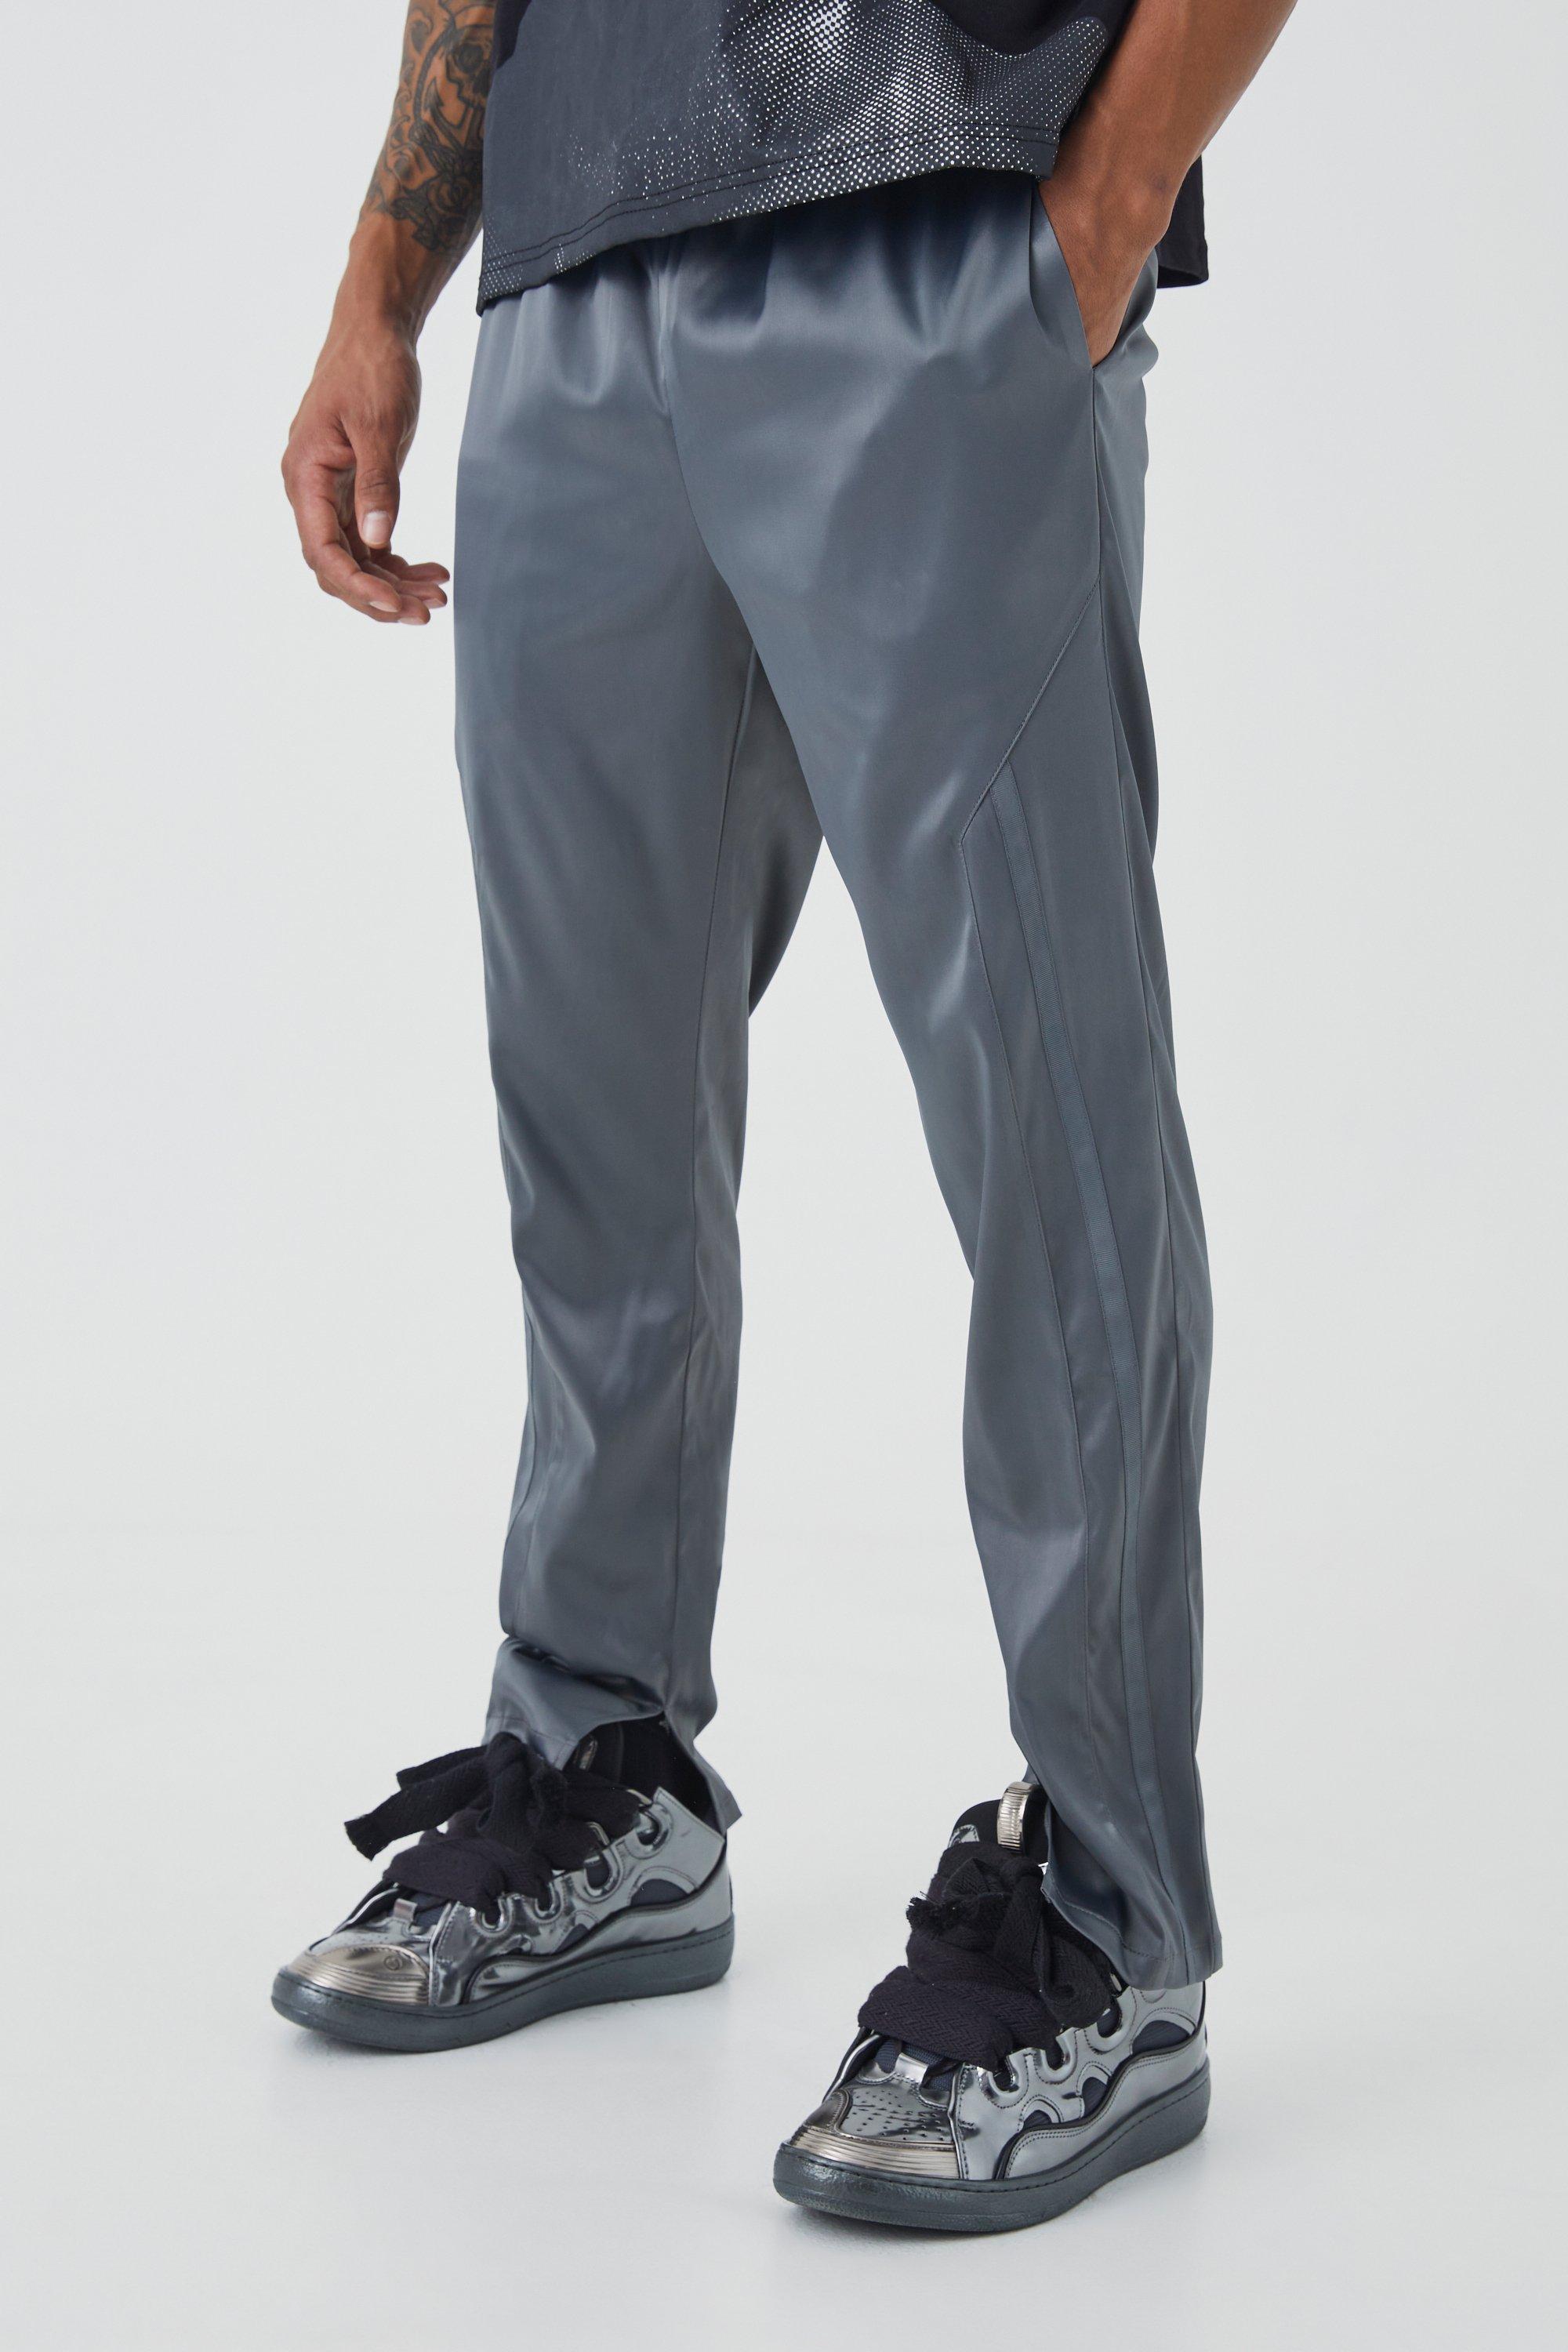 Men's Slim Fit Satin Split Hem Tape Trouser - Grey - S, Grey